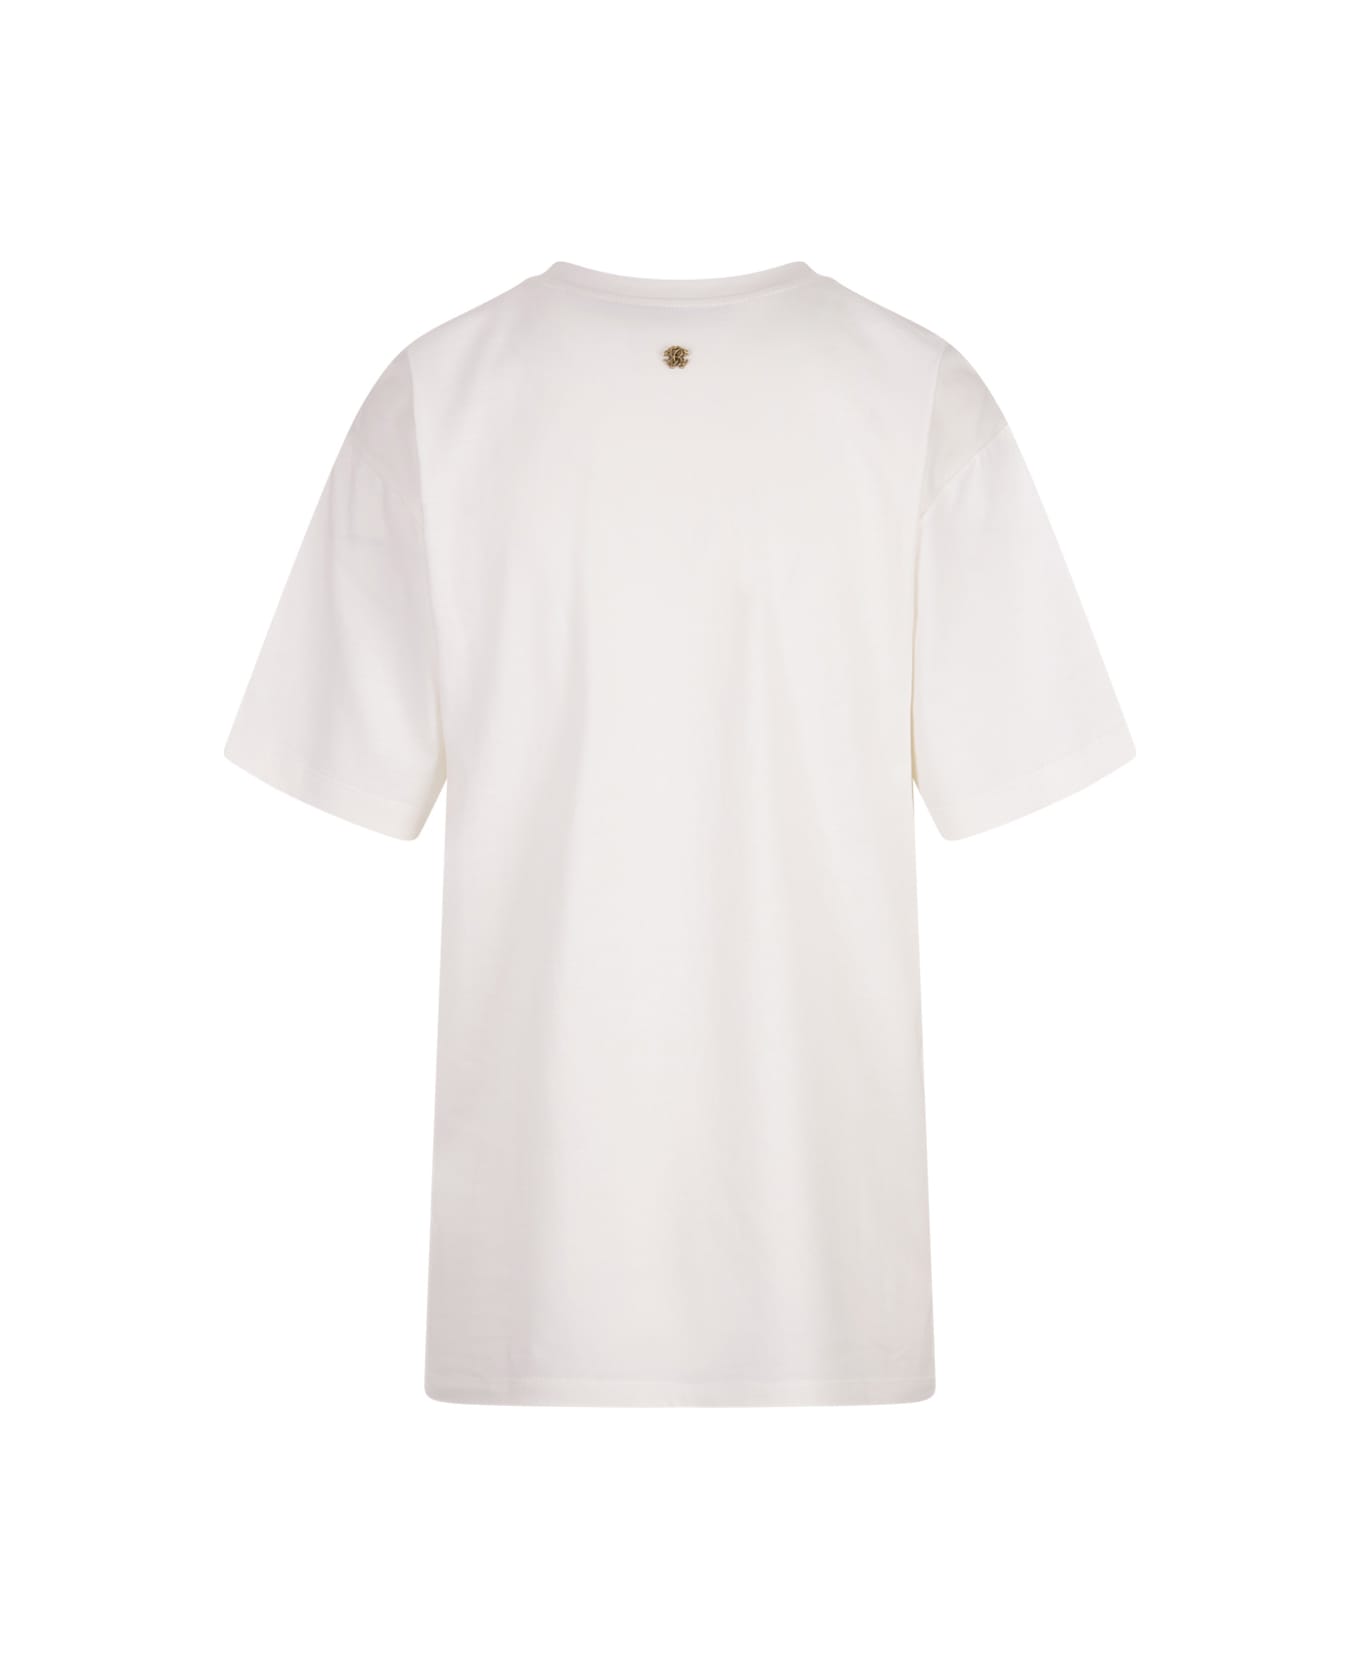 Roberto Cavalli Plumage T-shirt - White